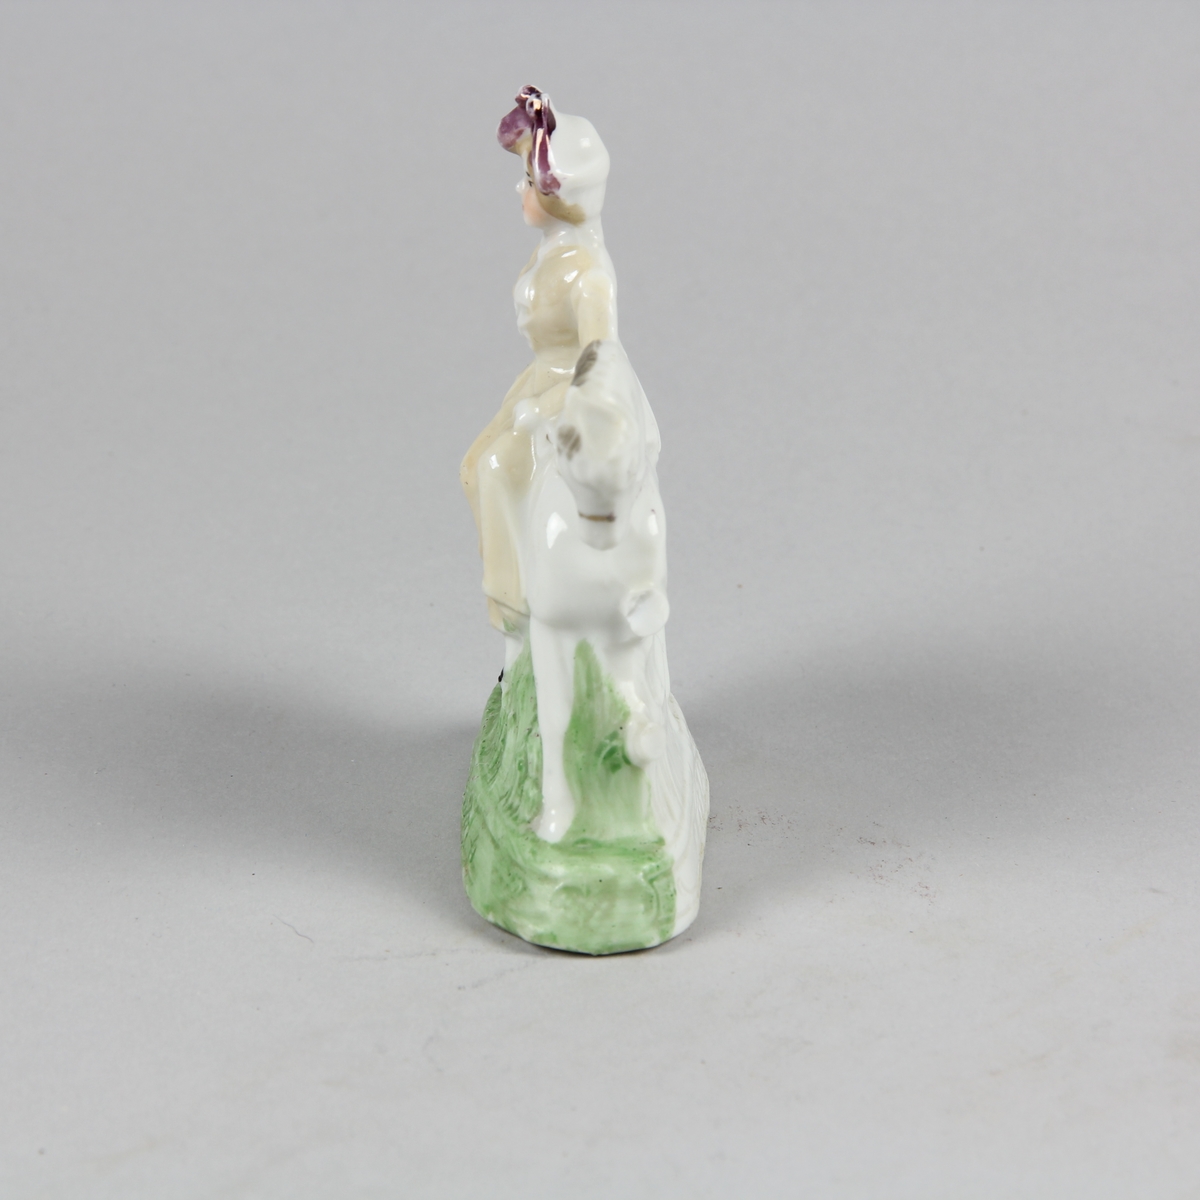 Prydnadsföremål av vitt porslin i form av liten skulptur föreställande en kvinna som sitter på en häst i damsadel. Kvinnan är klädd i lång gulvit klädnad och lila hatt. Hästen vit med svart man. Grönt gräs och grön sockel. Endast framsidan, vänd mot betraktaren är bemålad.